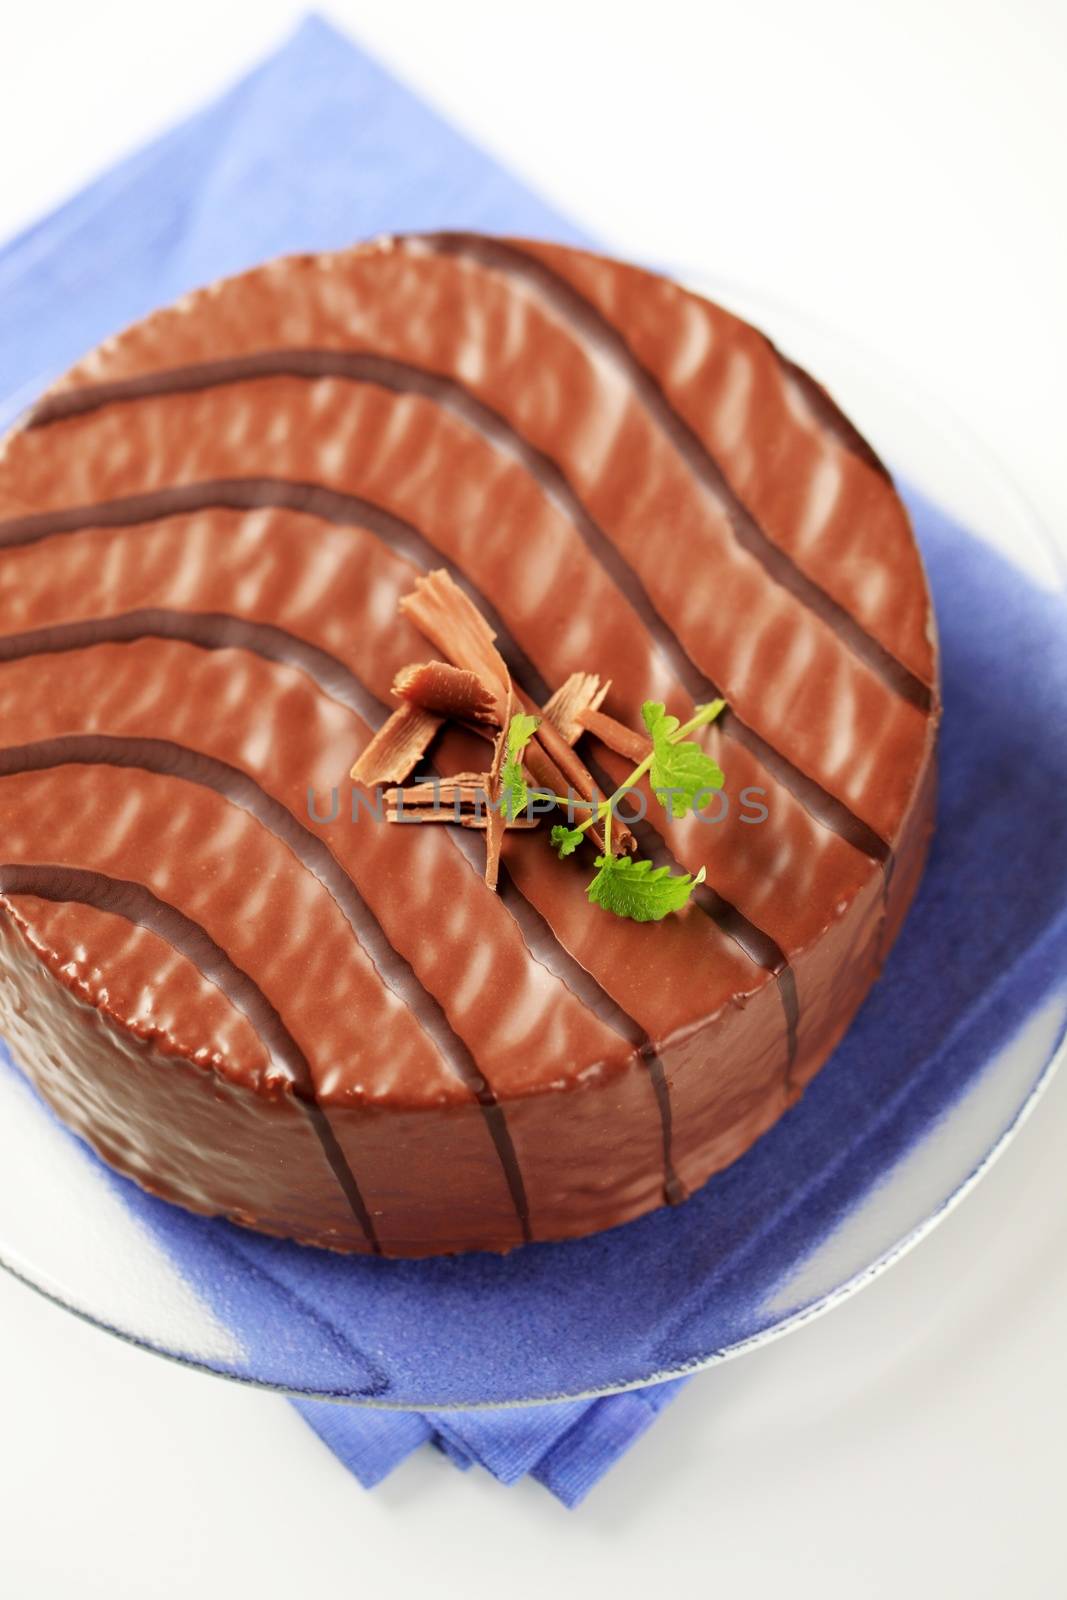 Chocolate glazed cake by Digifoodstock